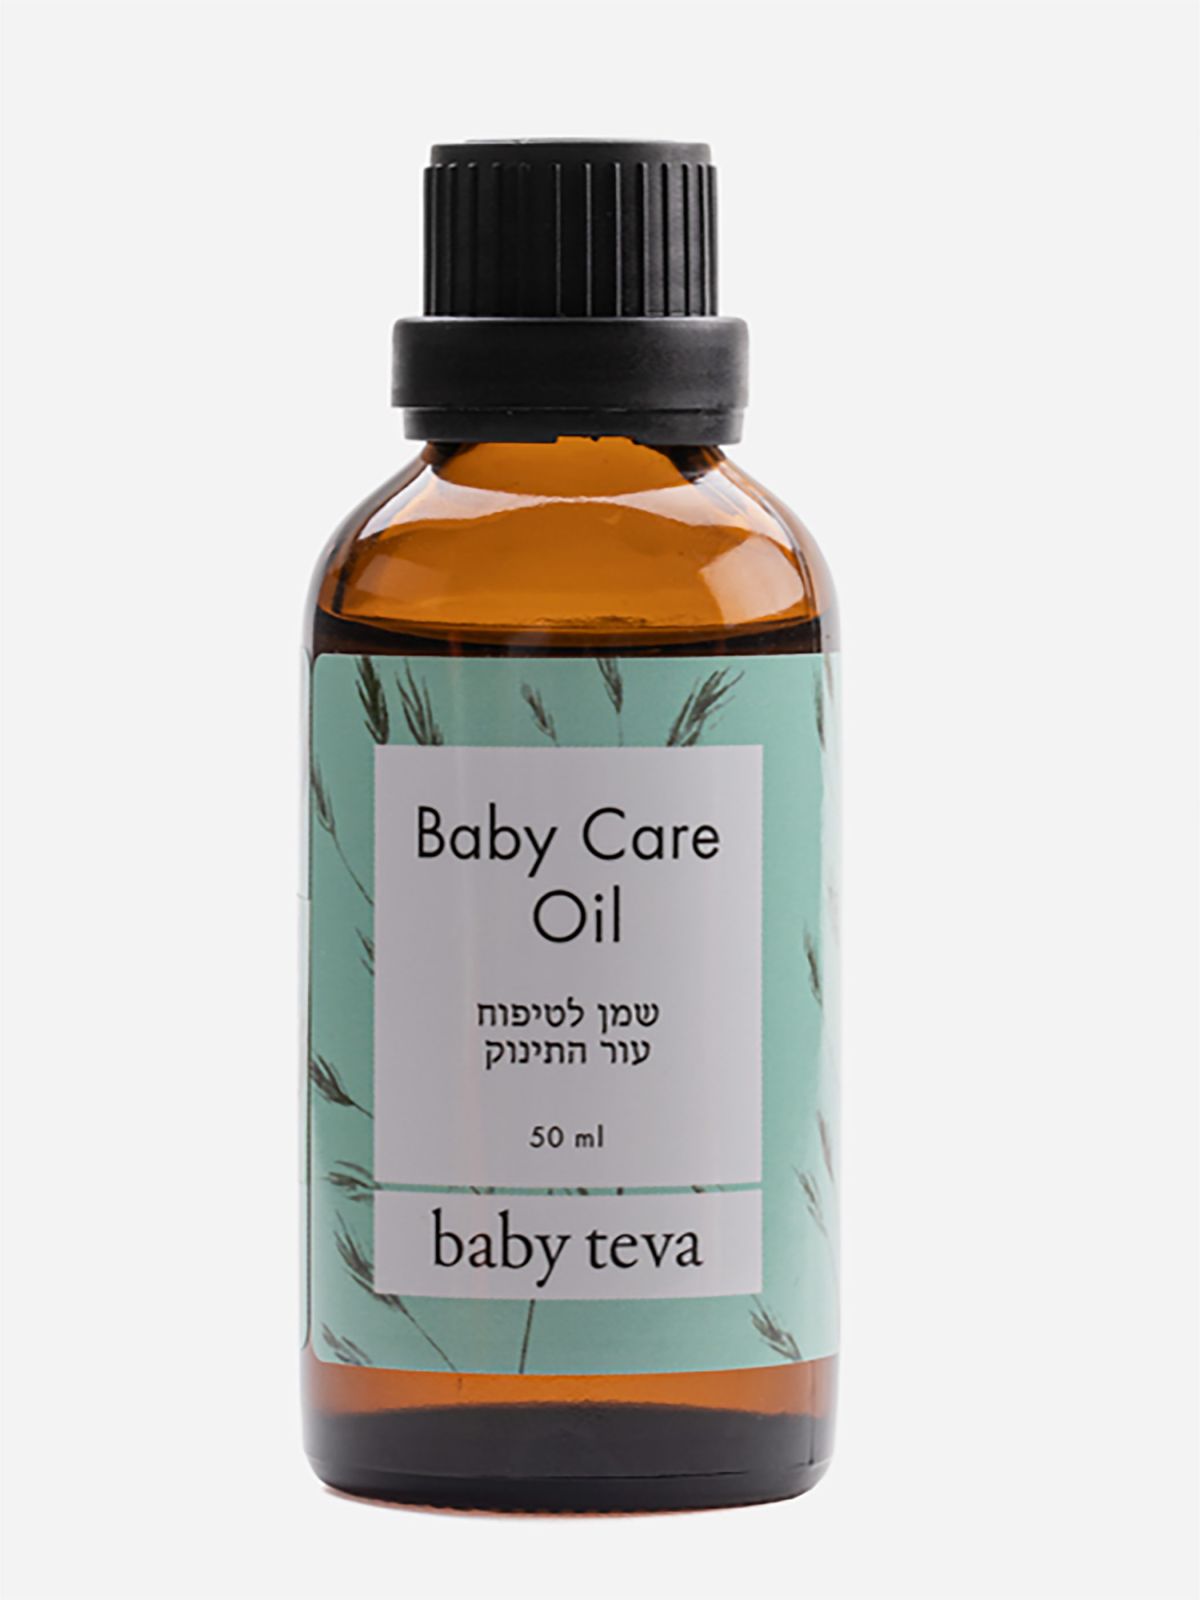  שמן ליובש בעור התינוק Baby Care Oil של BABY TEVA